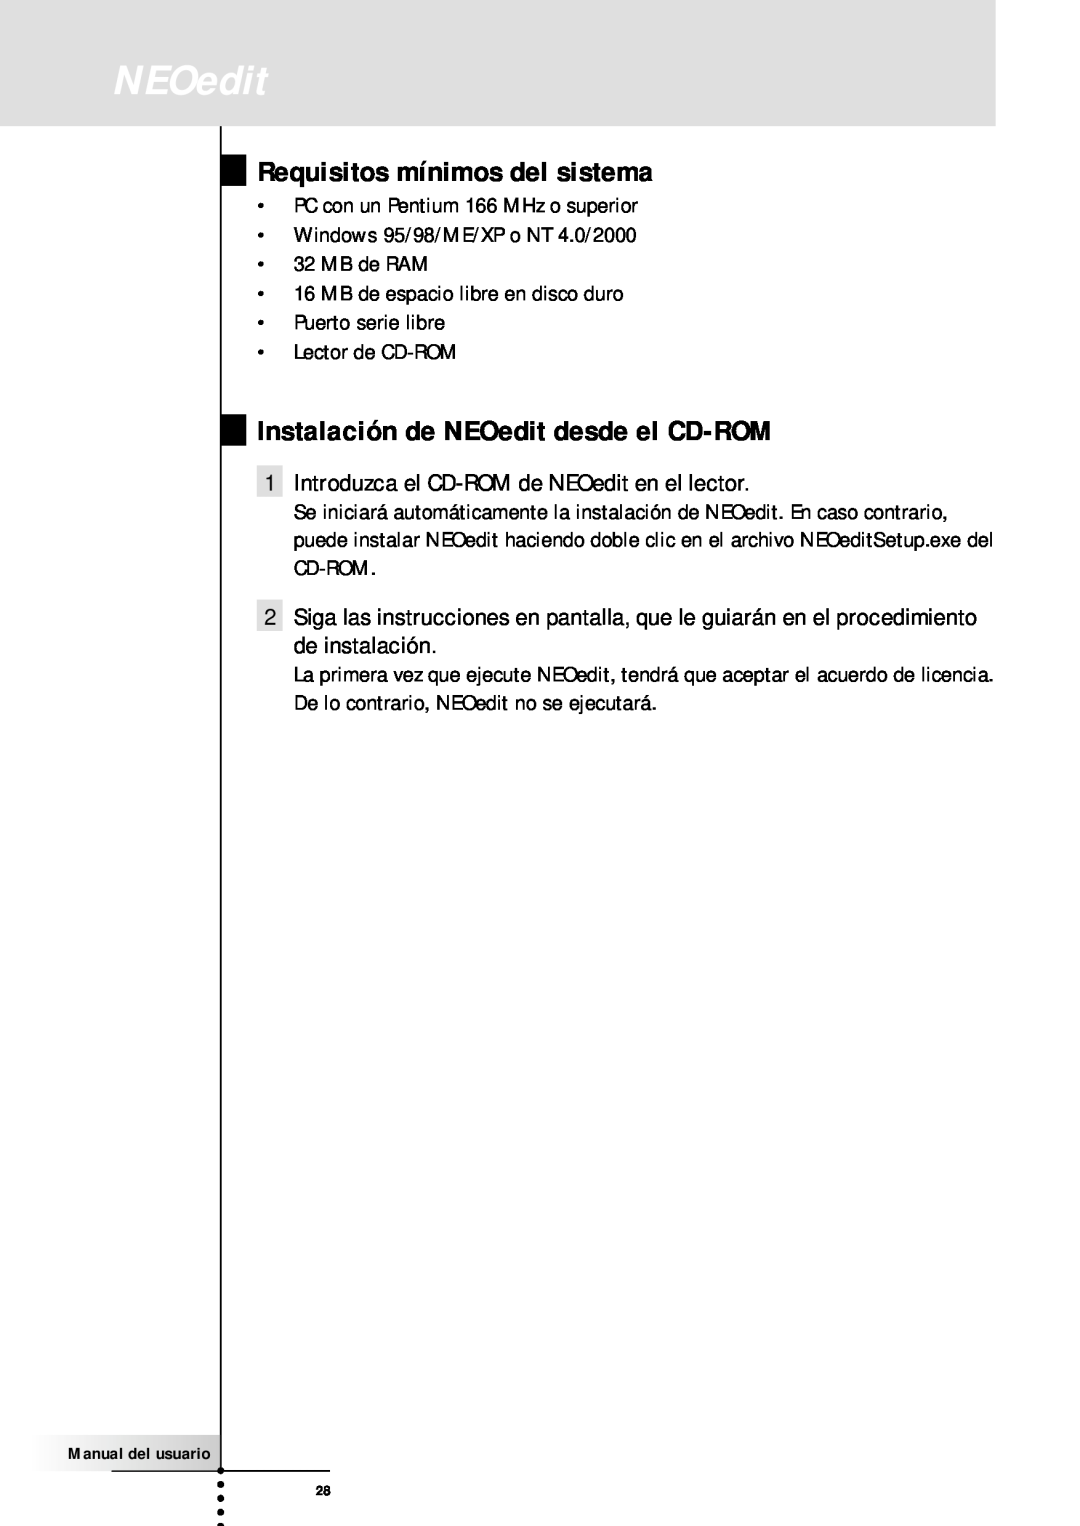 Philips SBC RU930 manual Requisitos mínimos del sistema, Instalación de NEOedit desde el CD-ROM 